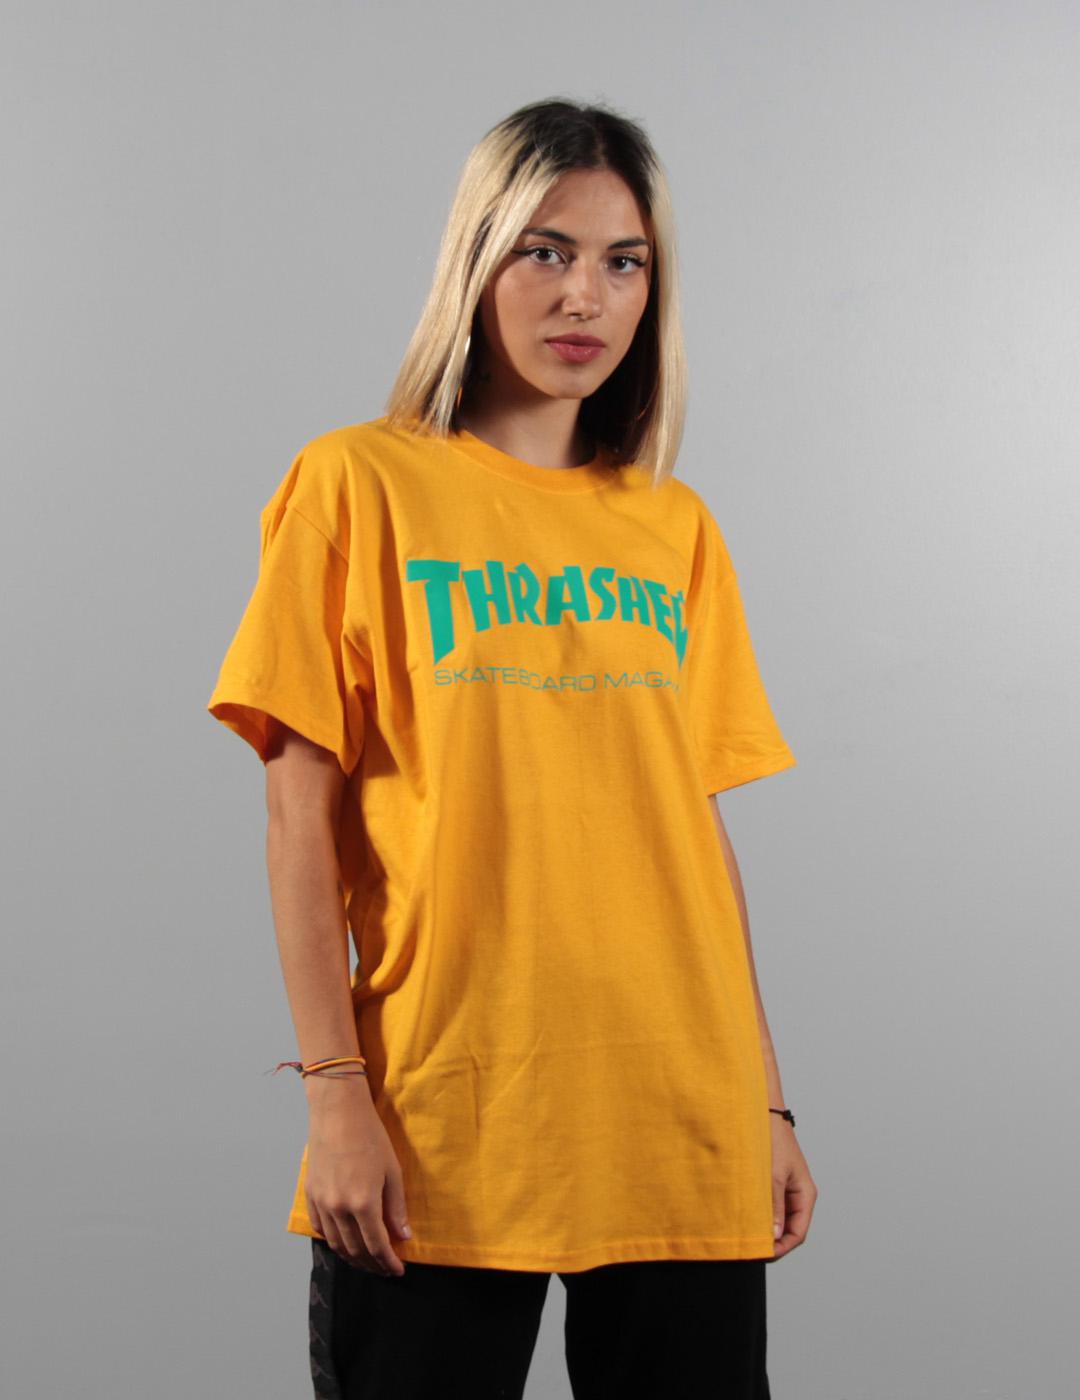 Camiseta Thrasher SKATE MAG - Gold